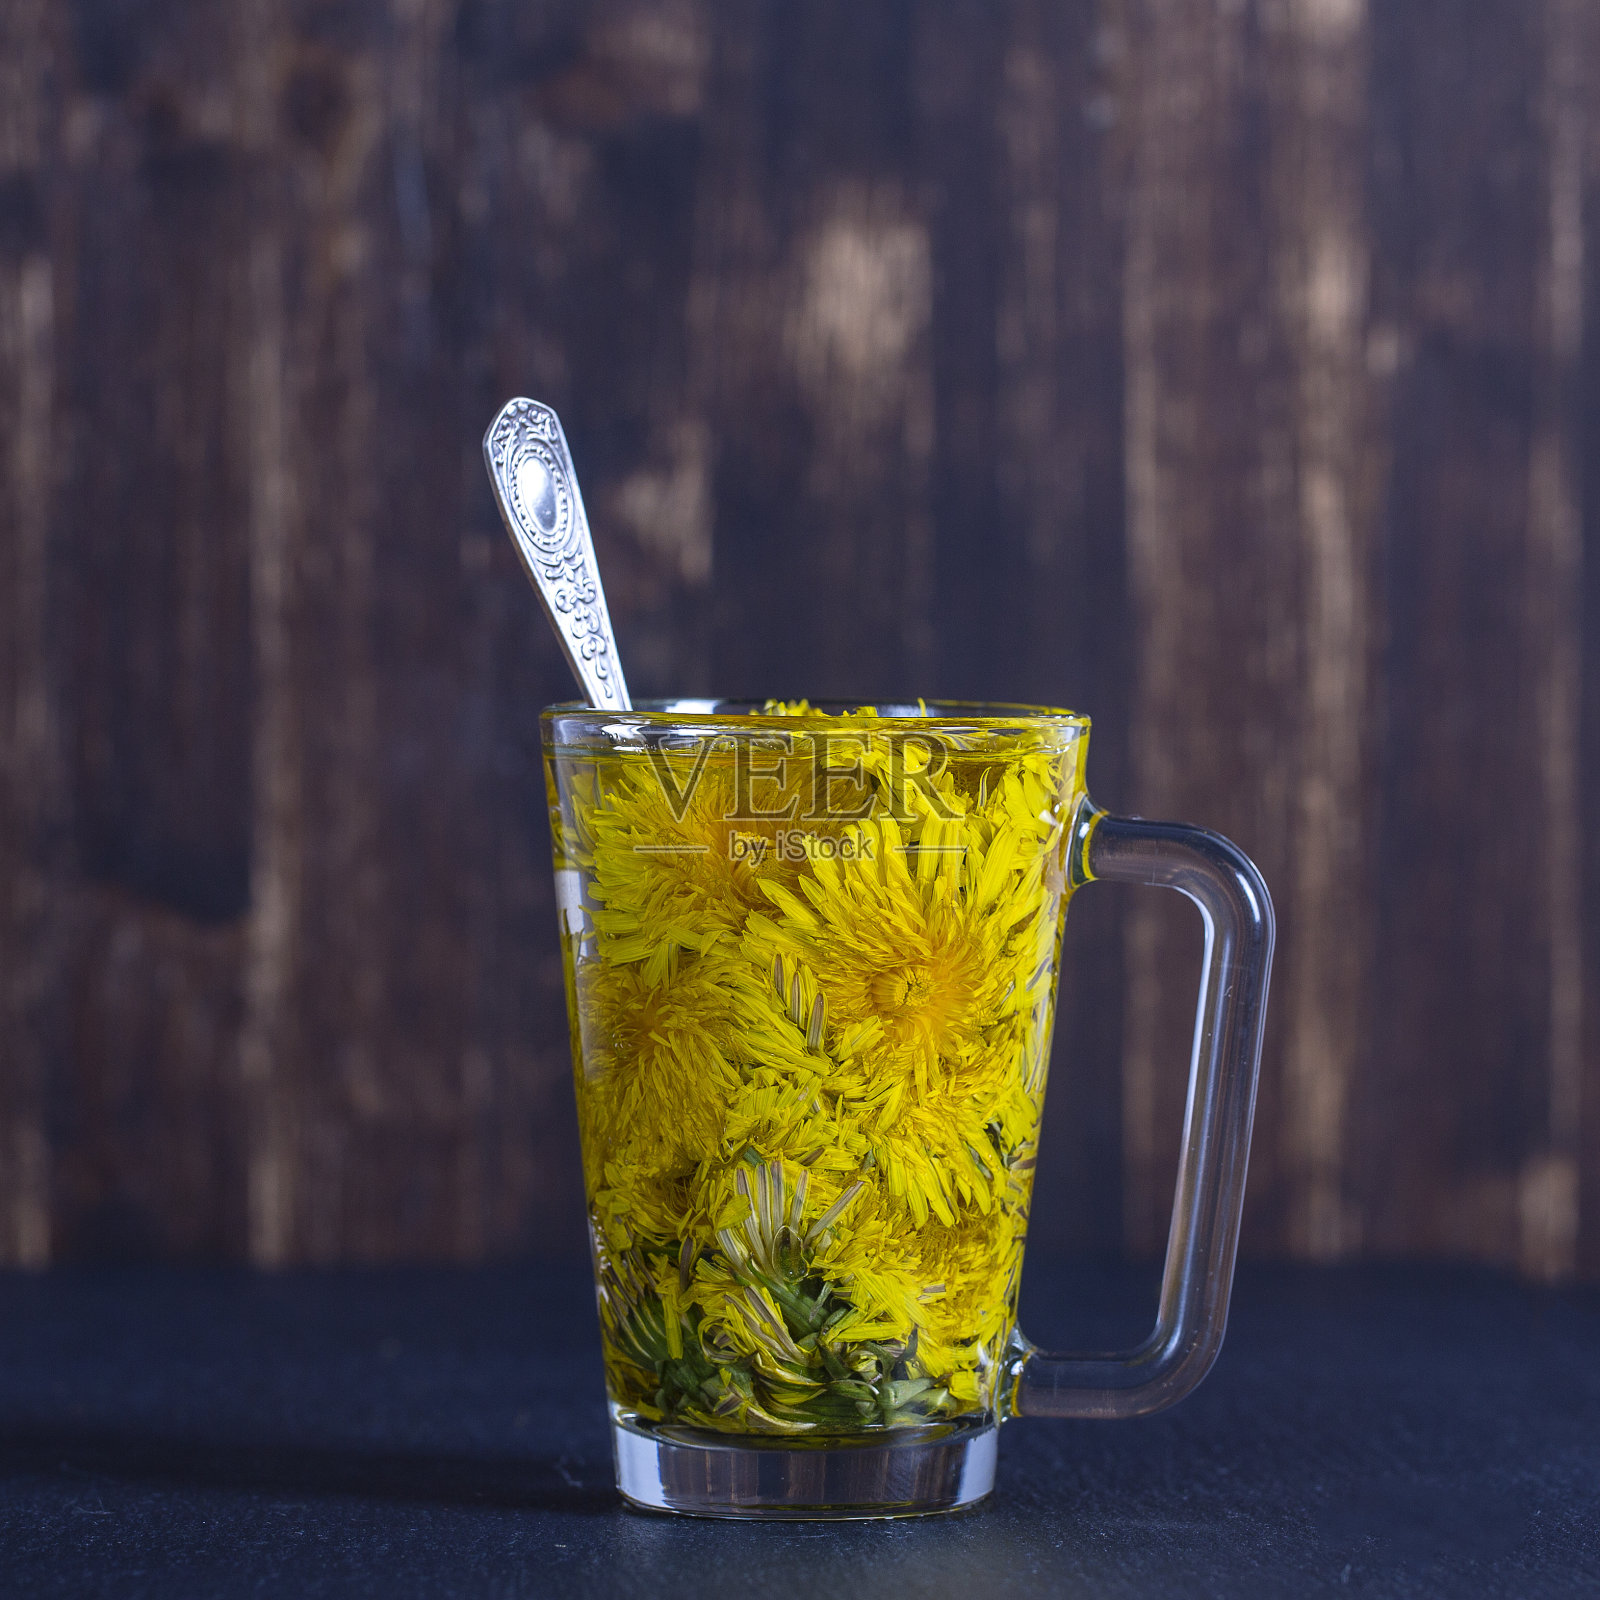 蒲公英黄花茶饮在玻璃杯中。健康饮食的概念照片摄影图片